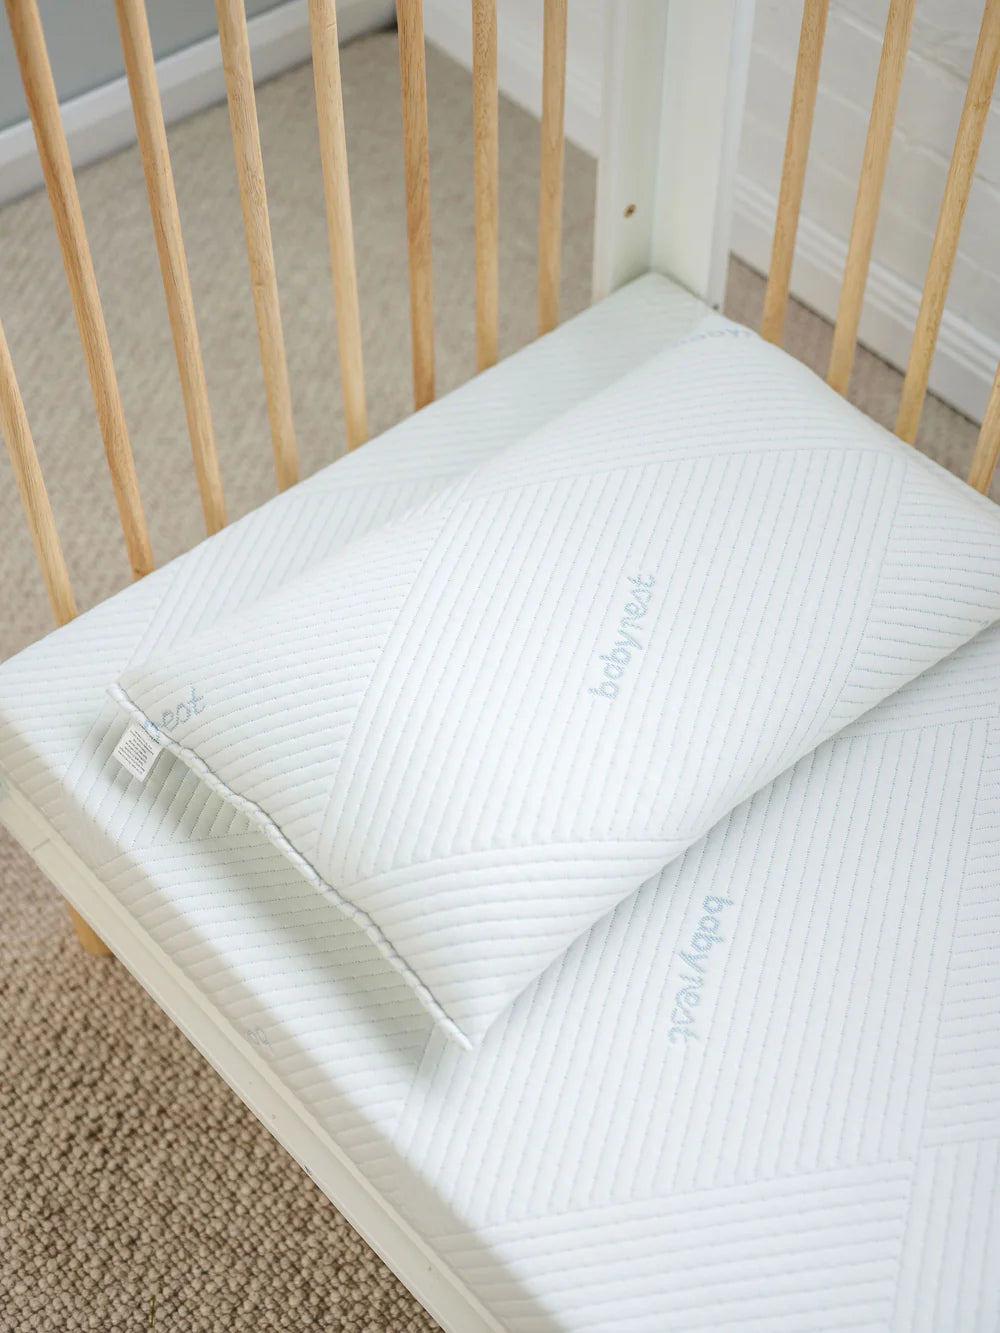 Babyrest | Junior Pillow - Ventilated & Bamboo